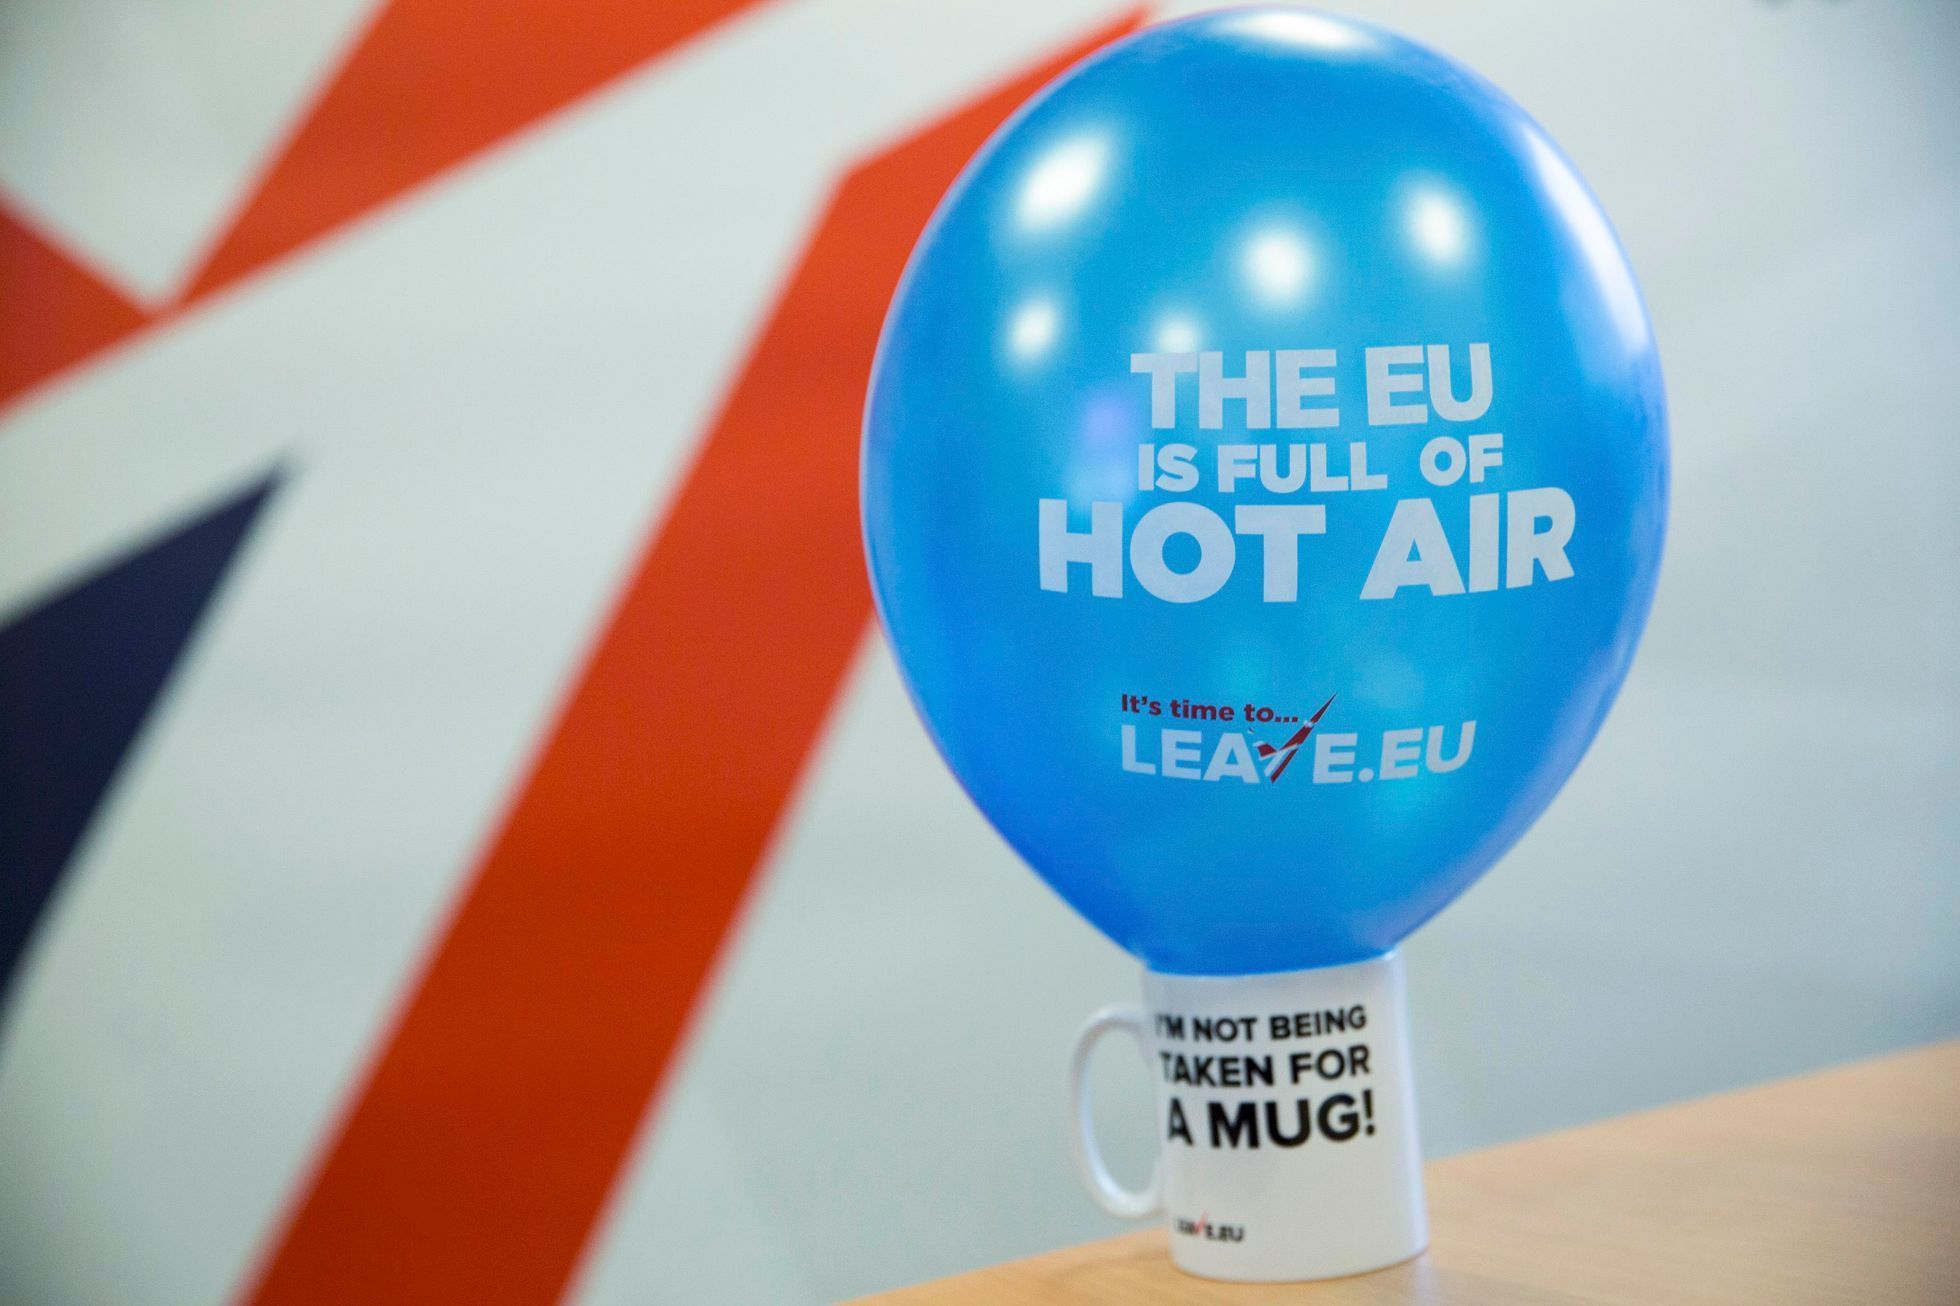 V EU je příliš horký vzduch. Raději odejděme, hlásá tábor zastánců brexitu.